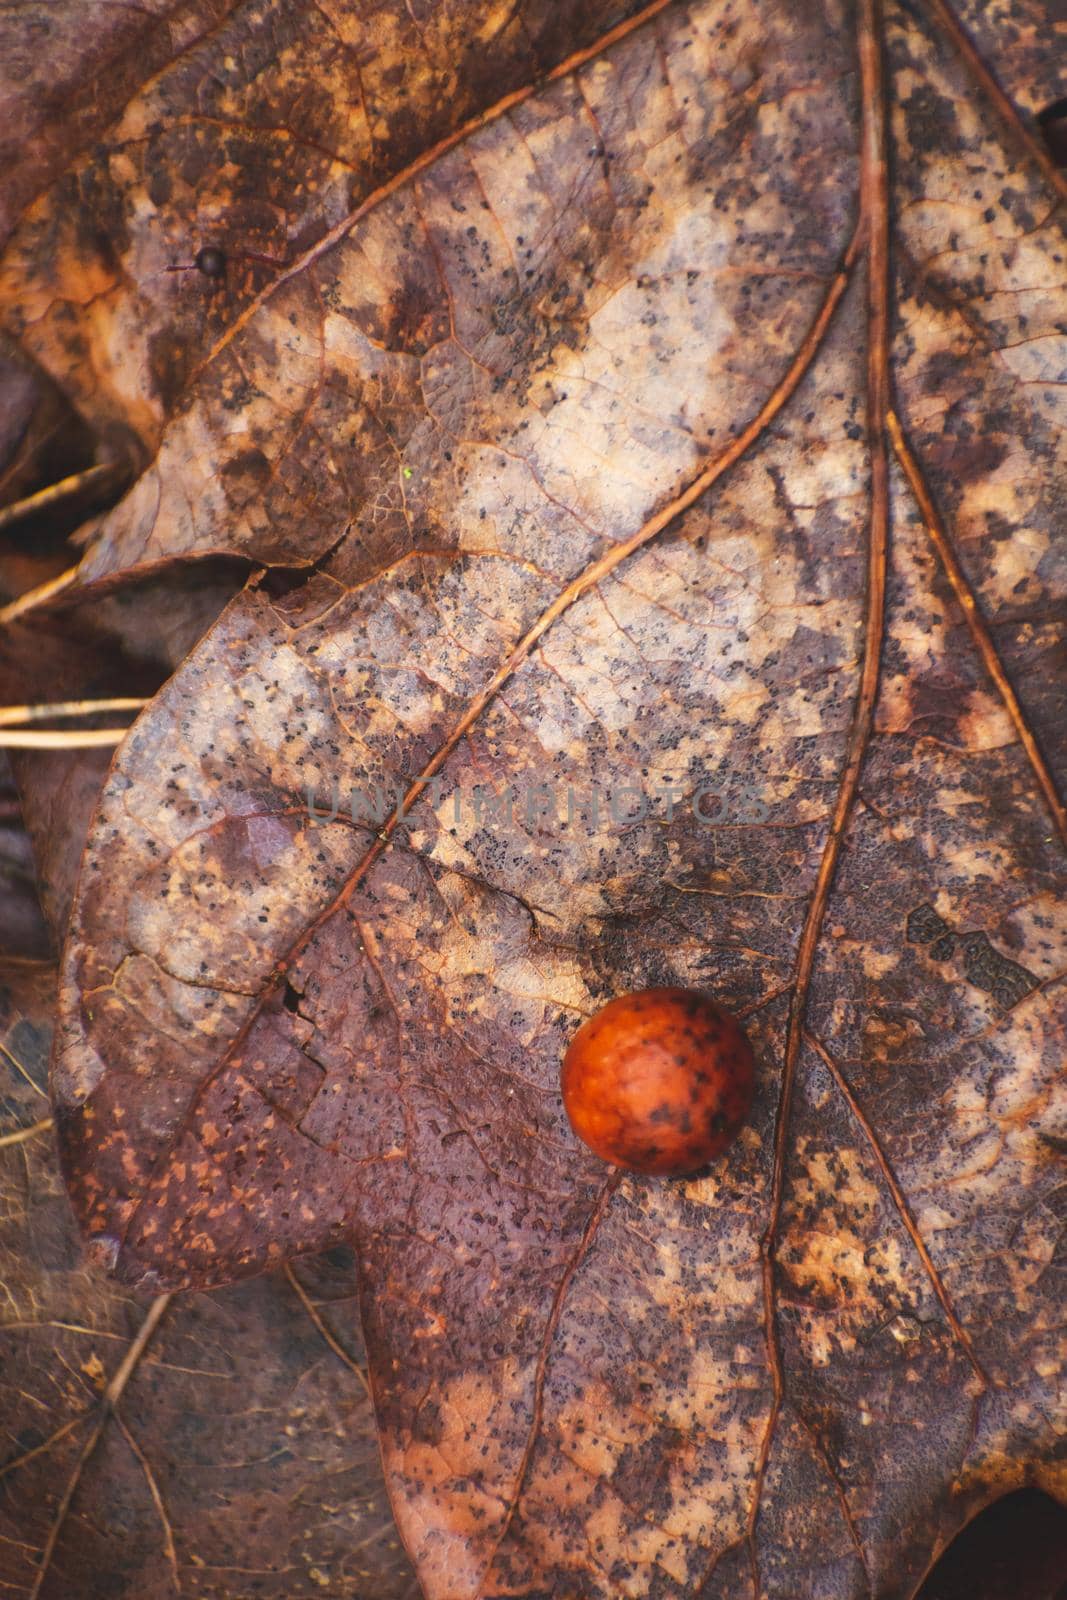 Ball gall on an oak leaf by darekb22